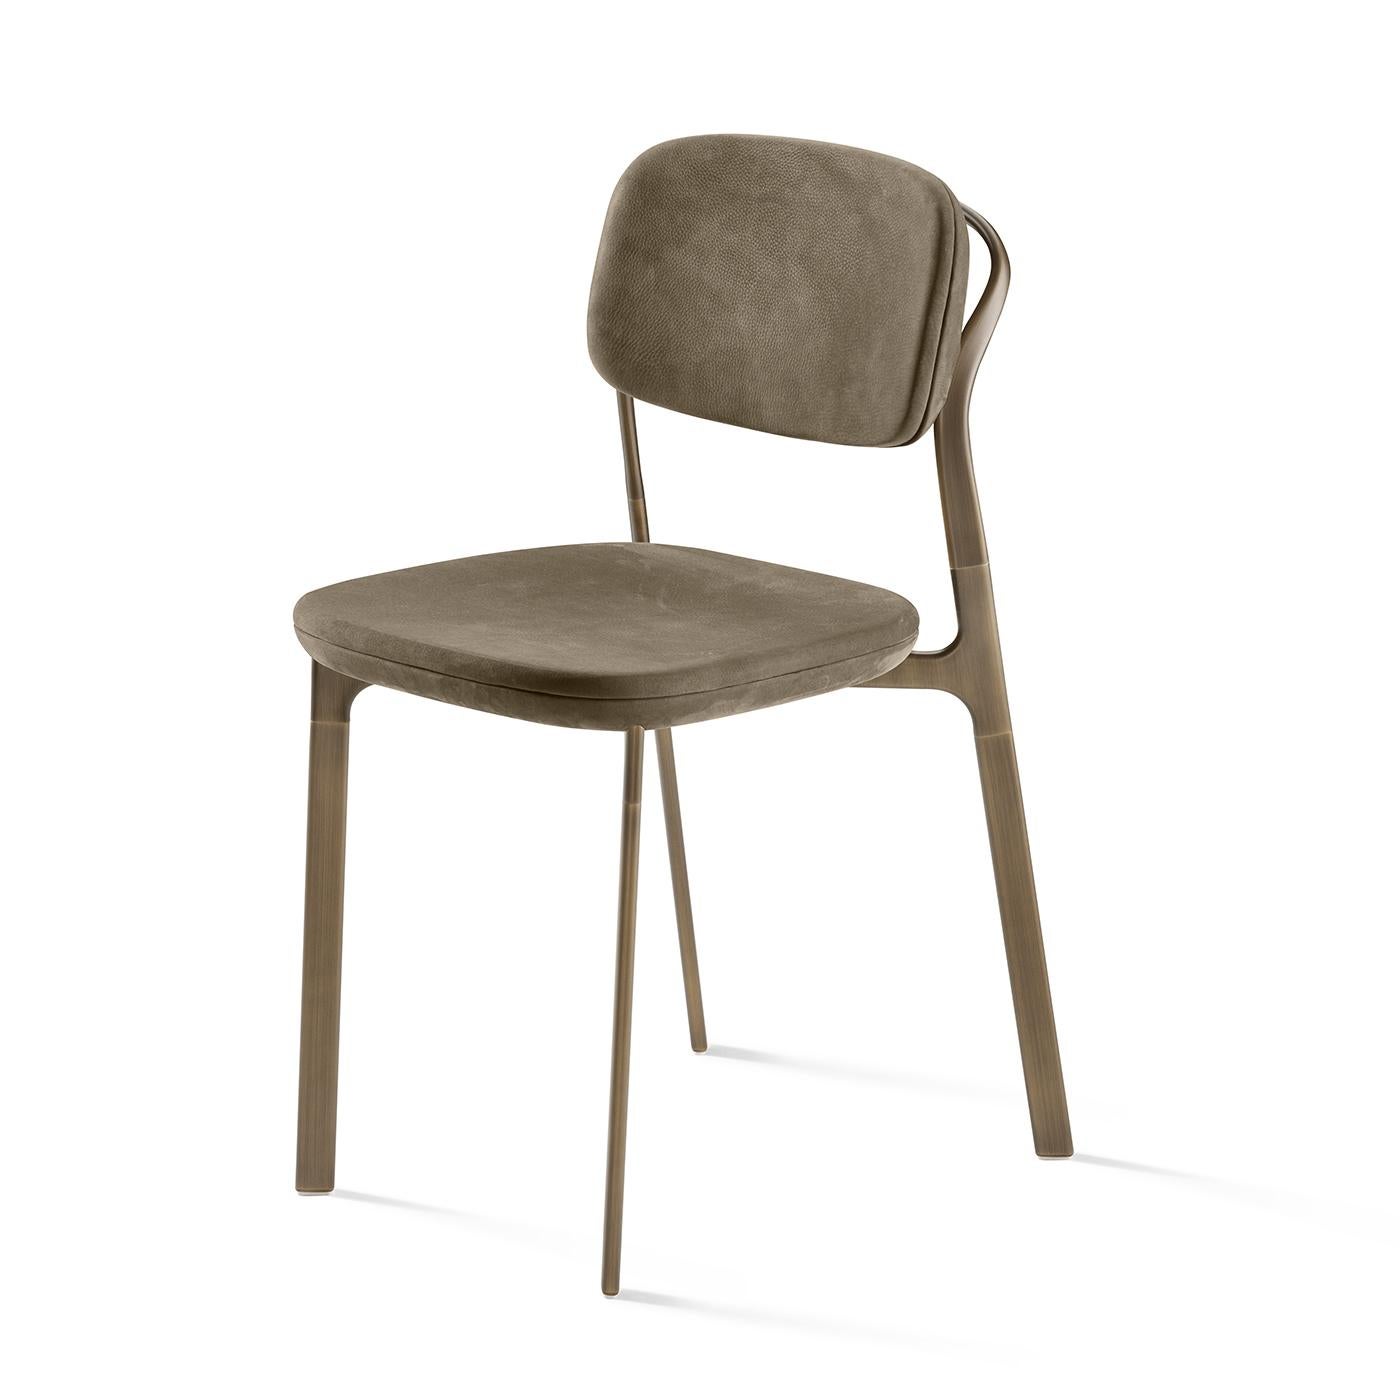 Inspiriert von klaren und klassischen Linien, zeigt dieser Stuhl ein elegantes, modernes Design, das jedes Esszimmer mühelos bereichert, wenn er zusammen mit anderen Stühlen der gleichen Serie am Tisch steht. Er ruht auf einem Messinggestell und